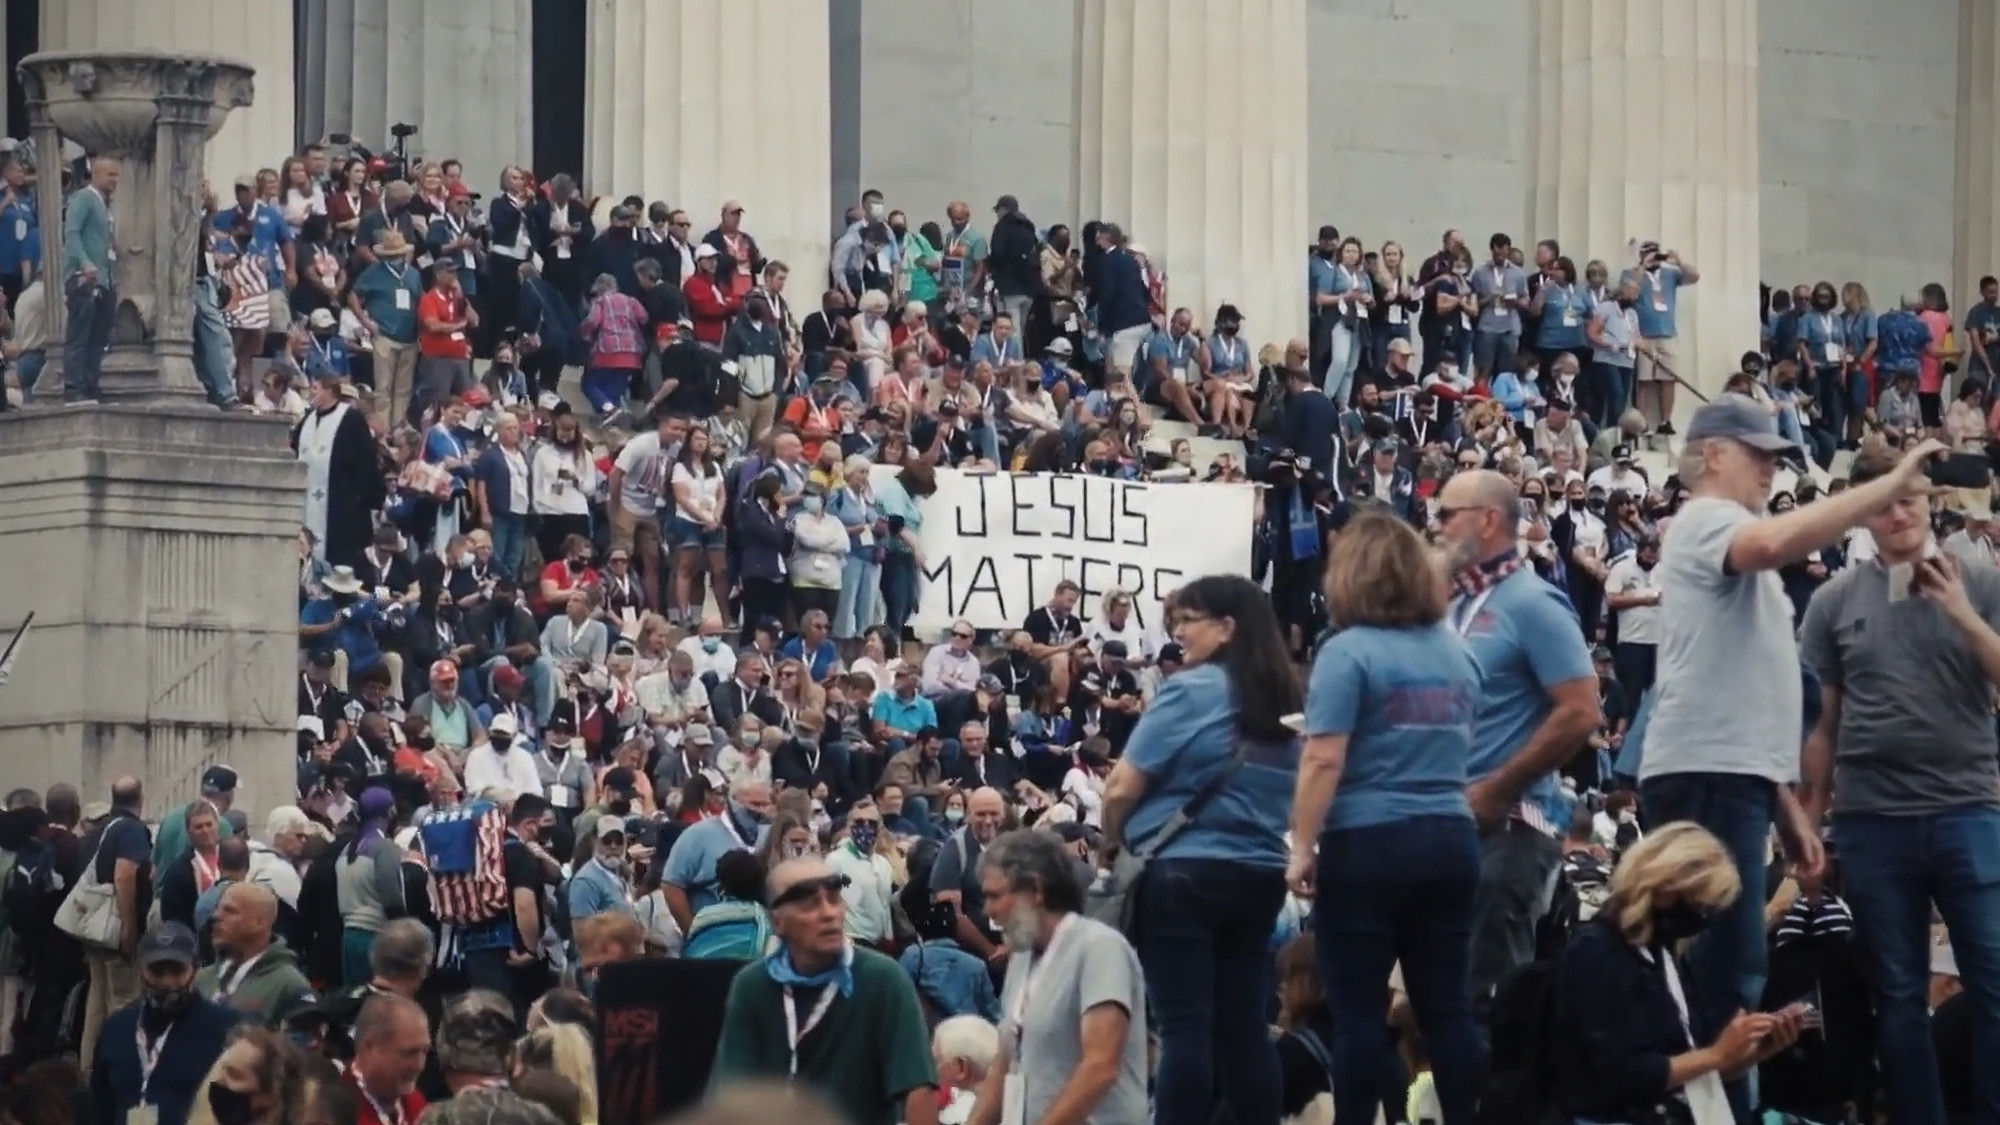 En stor folkemengde samlet i og foran trappen til en stor bygning. Noen holder et banner med teksten: Jesus Matters. Foto.